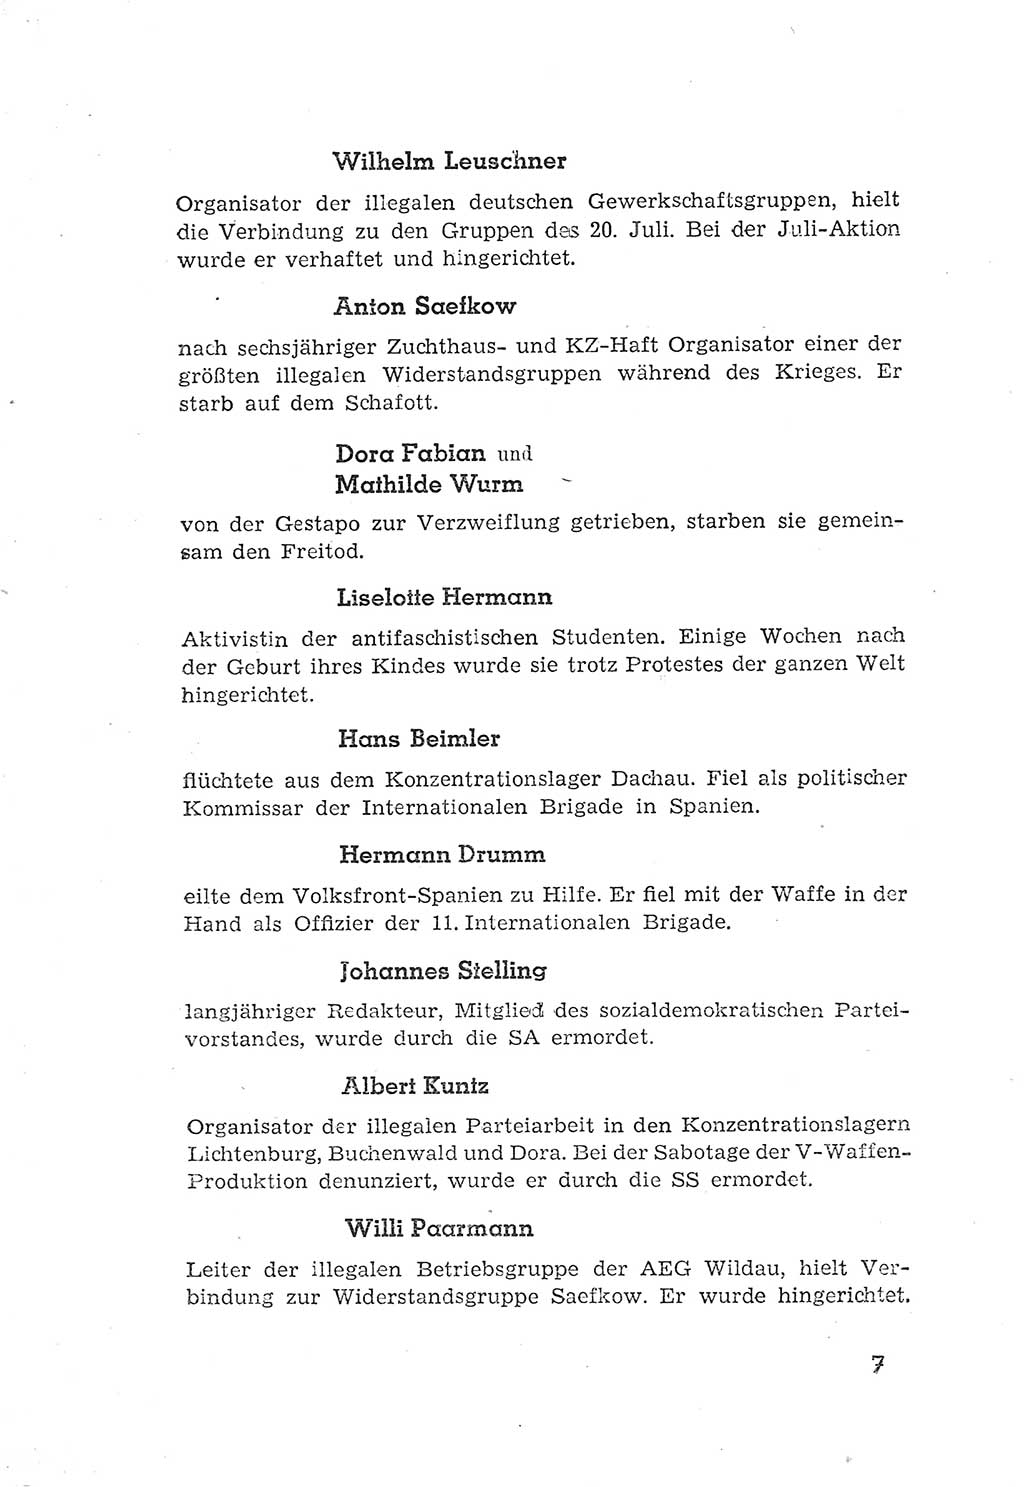 Protokoll der Verhandlungen des 2. Parteitages der Sozialistischen Einheitspartei Deutschlands (SED) [Sowjetische Besatzungszone (SBZ) Deutschlands] 1947, Seite 7 (Prot. Verh. 2. PT SED SBZ Dtl. 1947, S. 7)